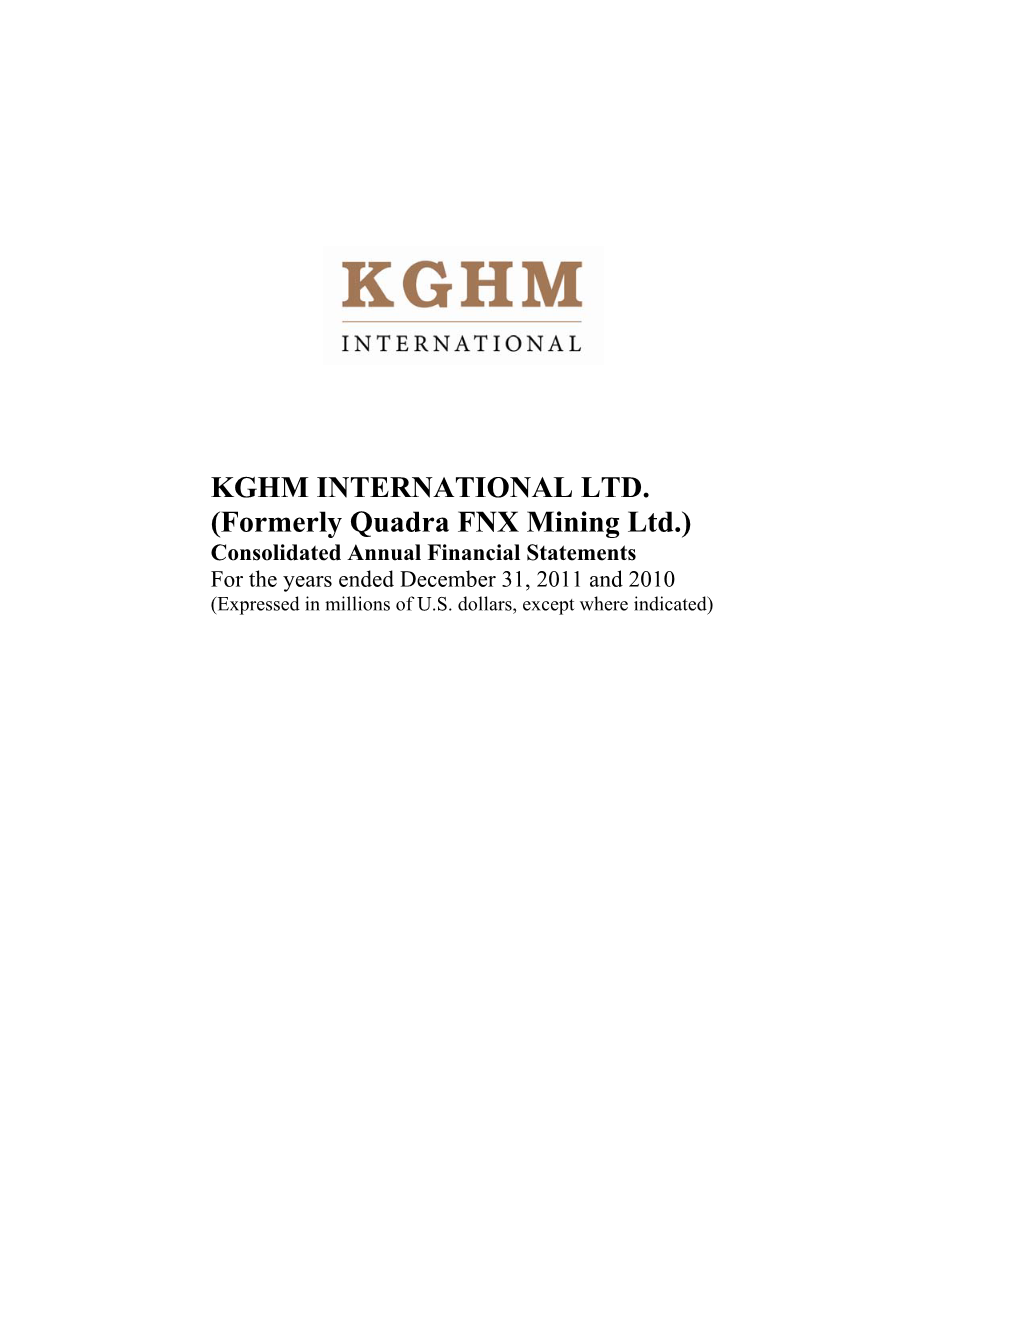 KGHM INTERNATIONAL LTD. (Formerly Quadra FNX Mining Ltd.)